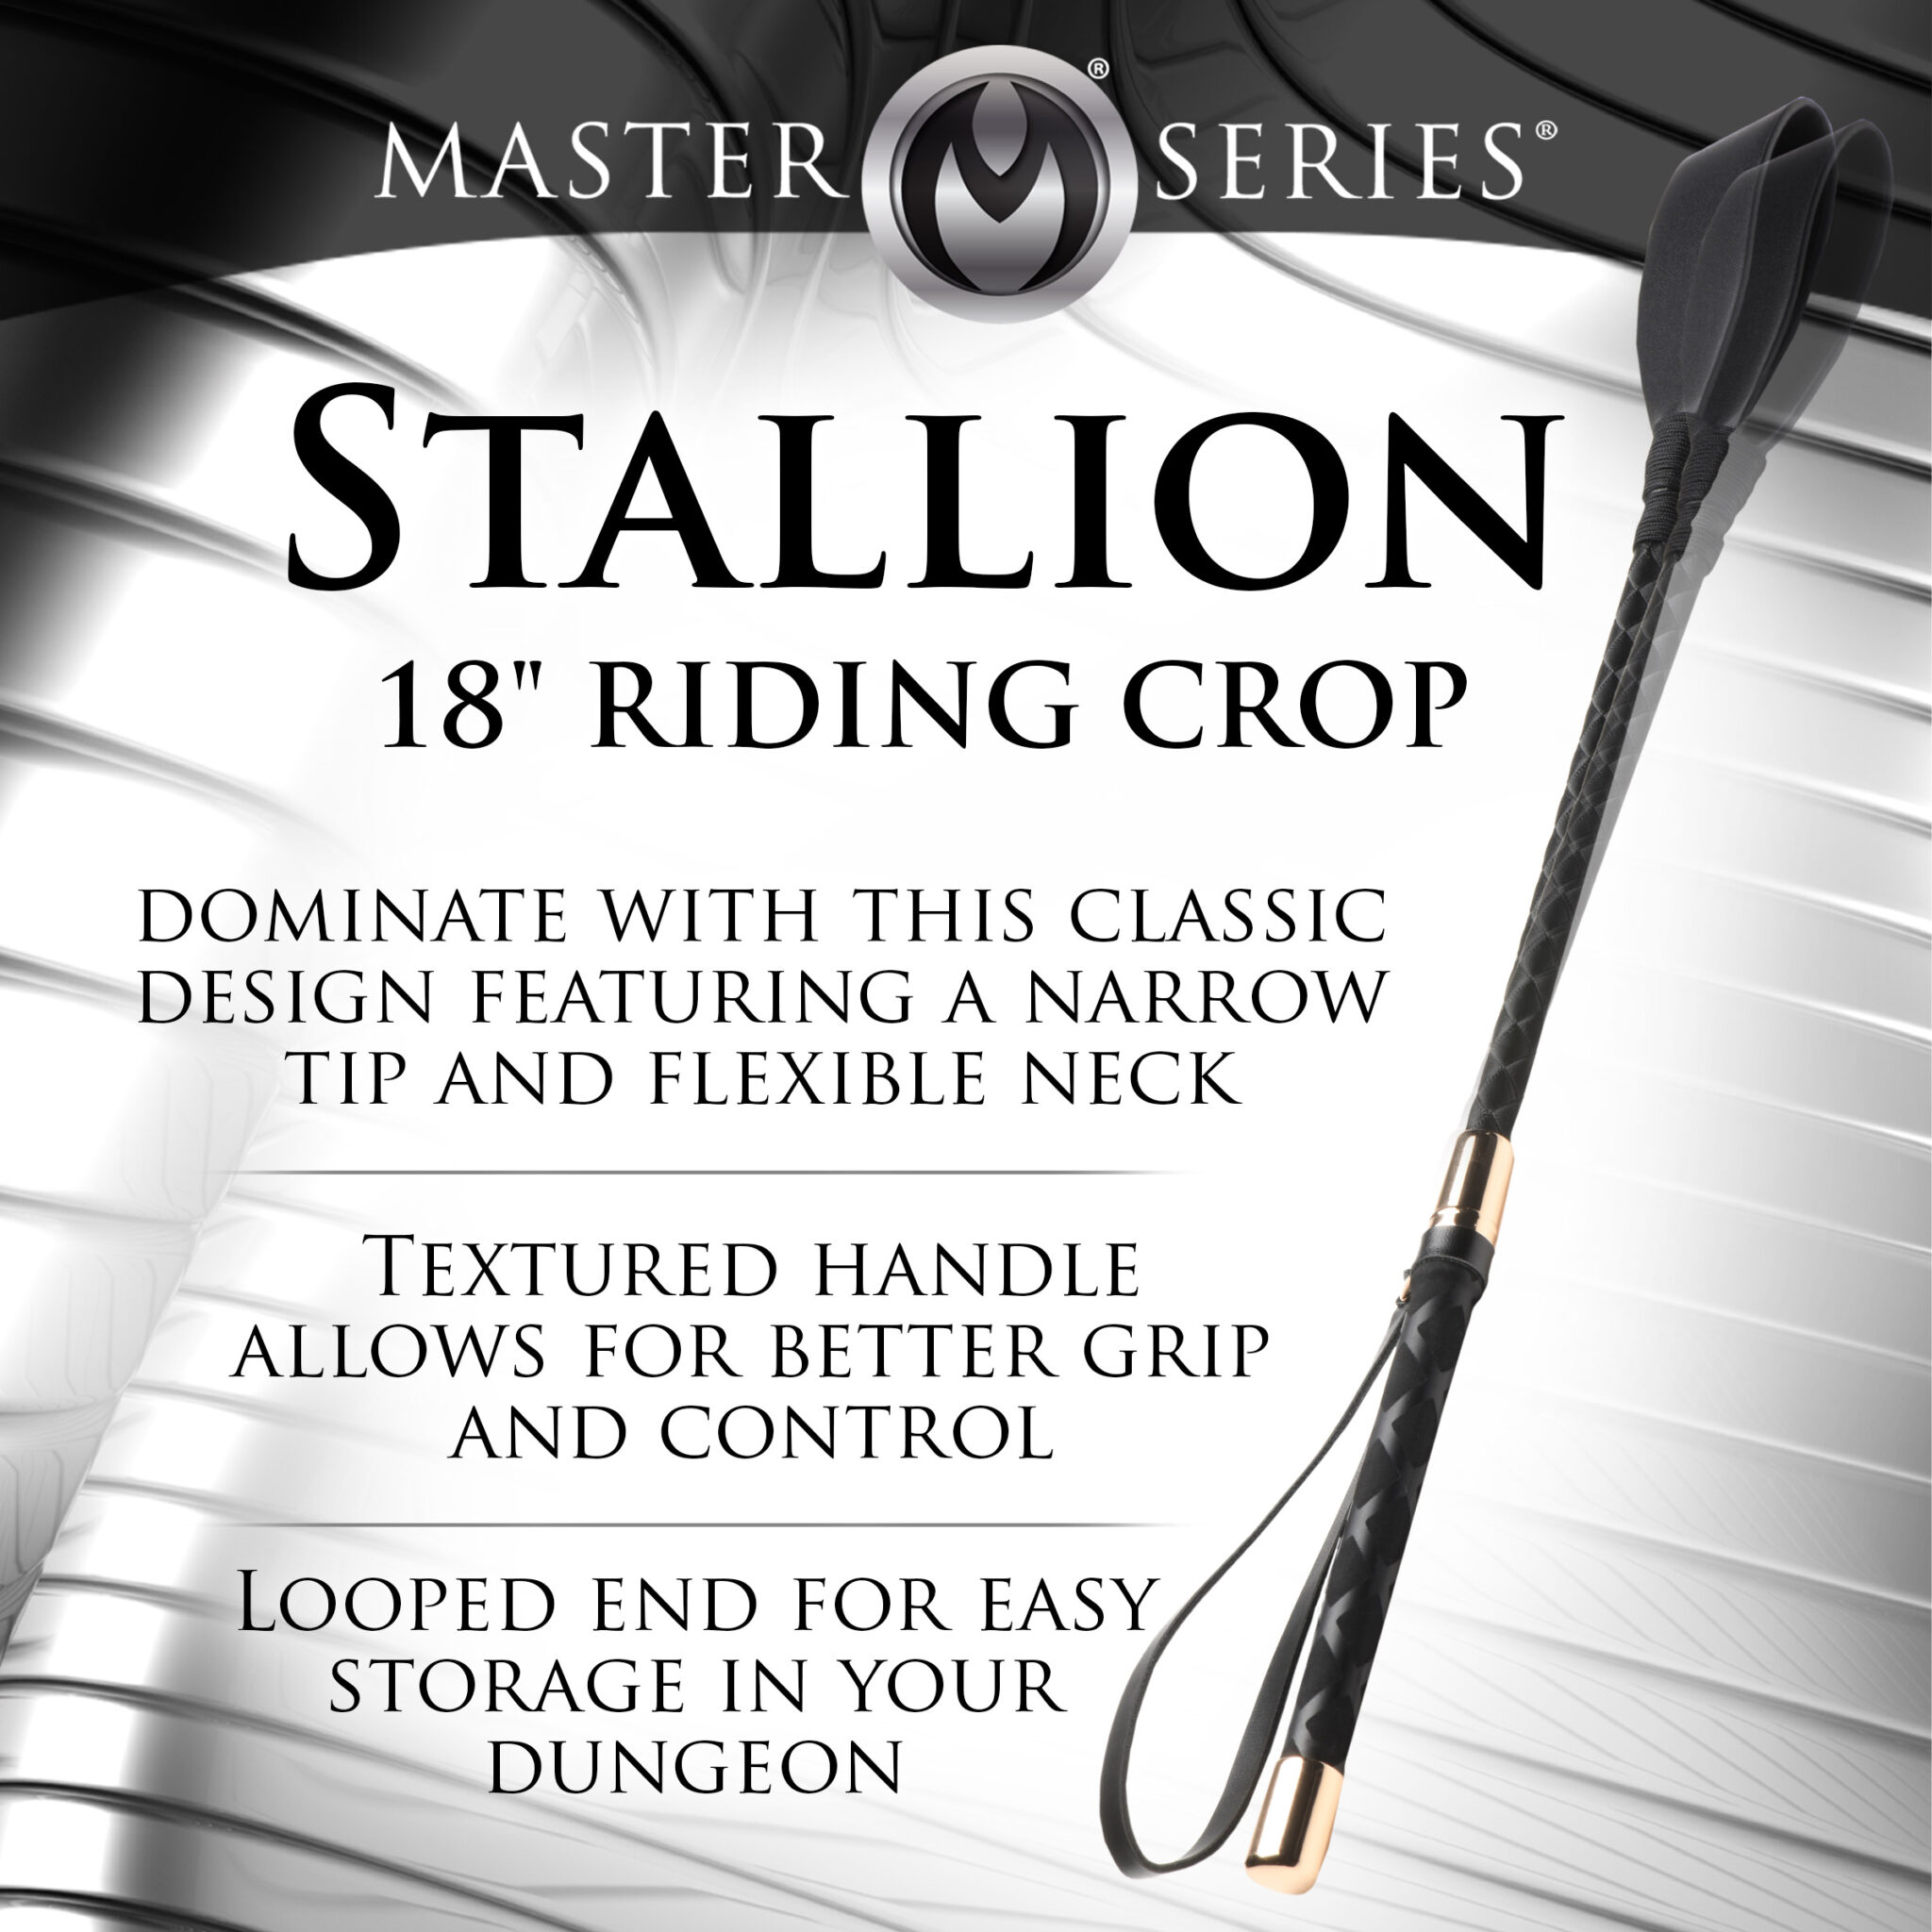 Stallion Riding Crop – 18 Inch